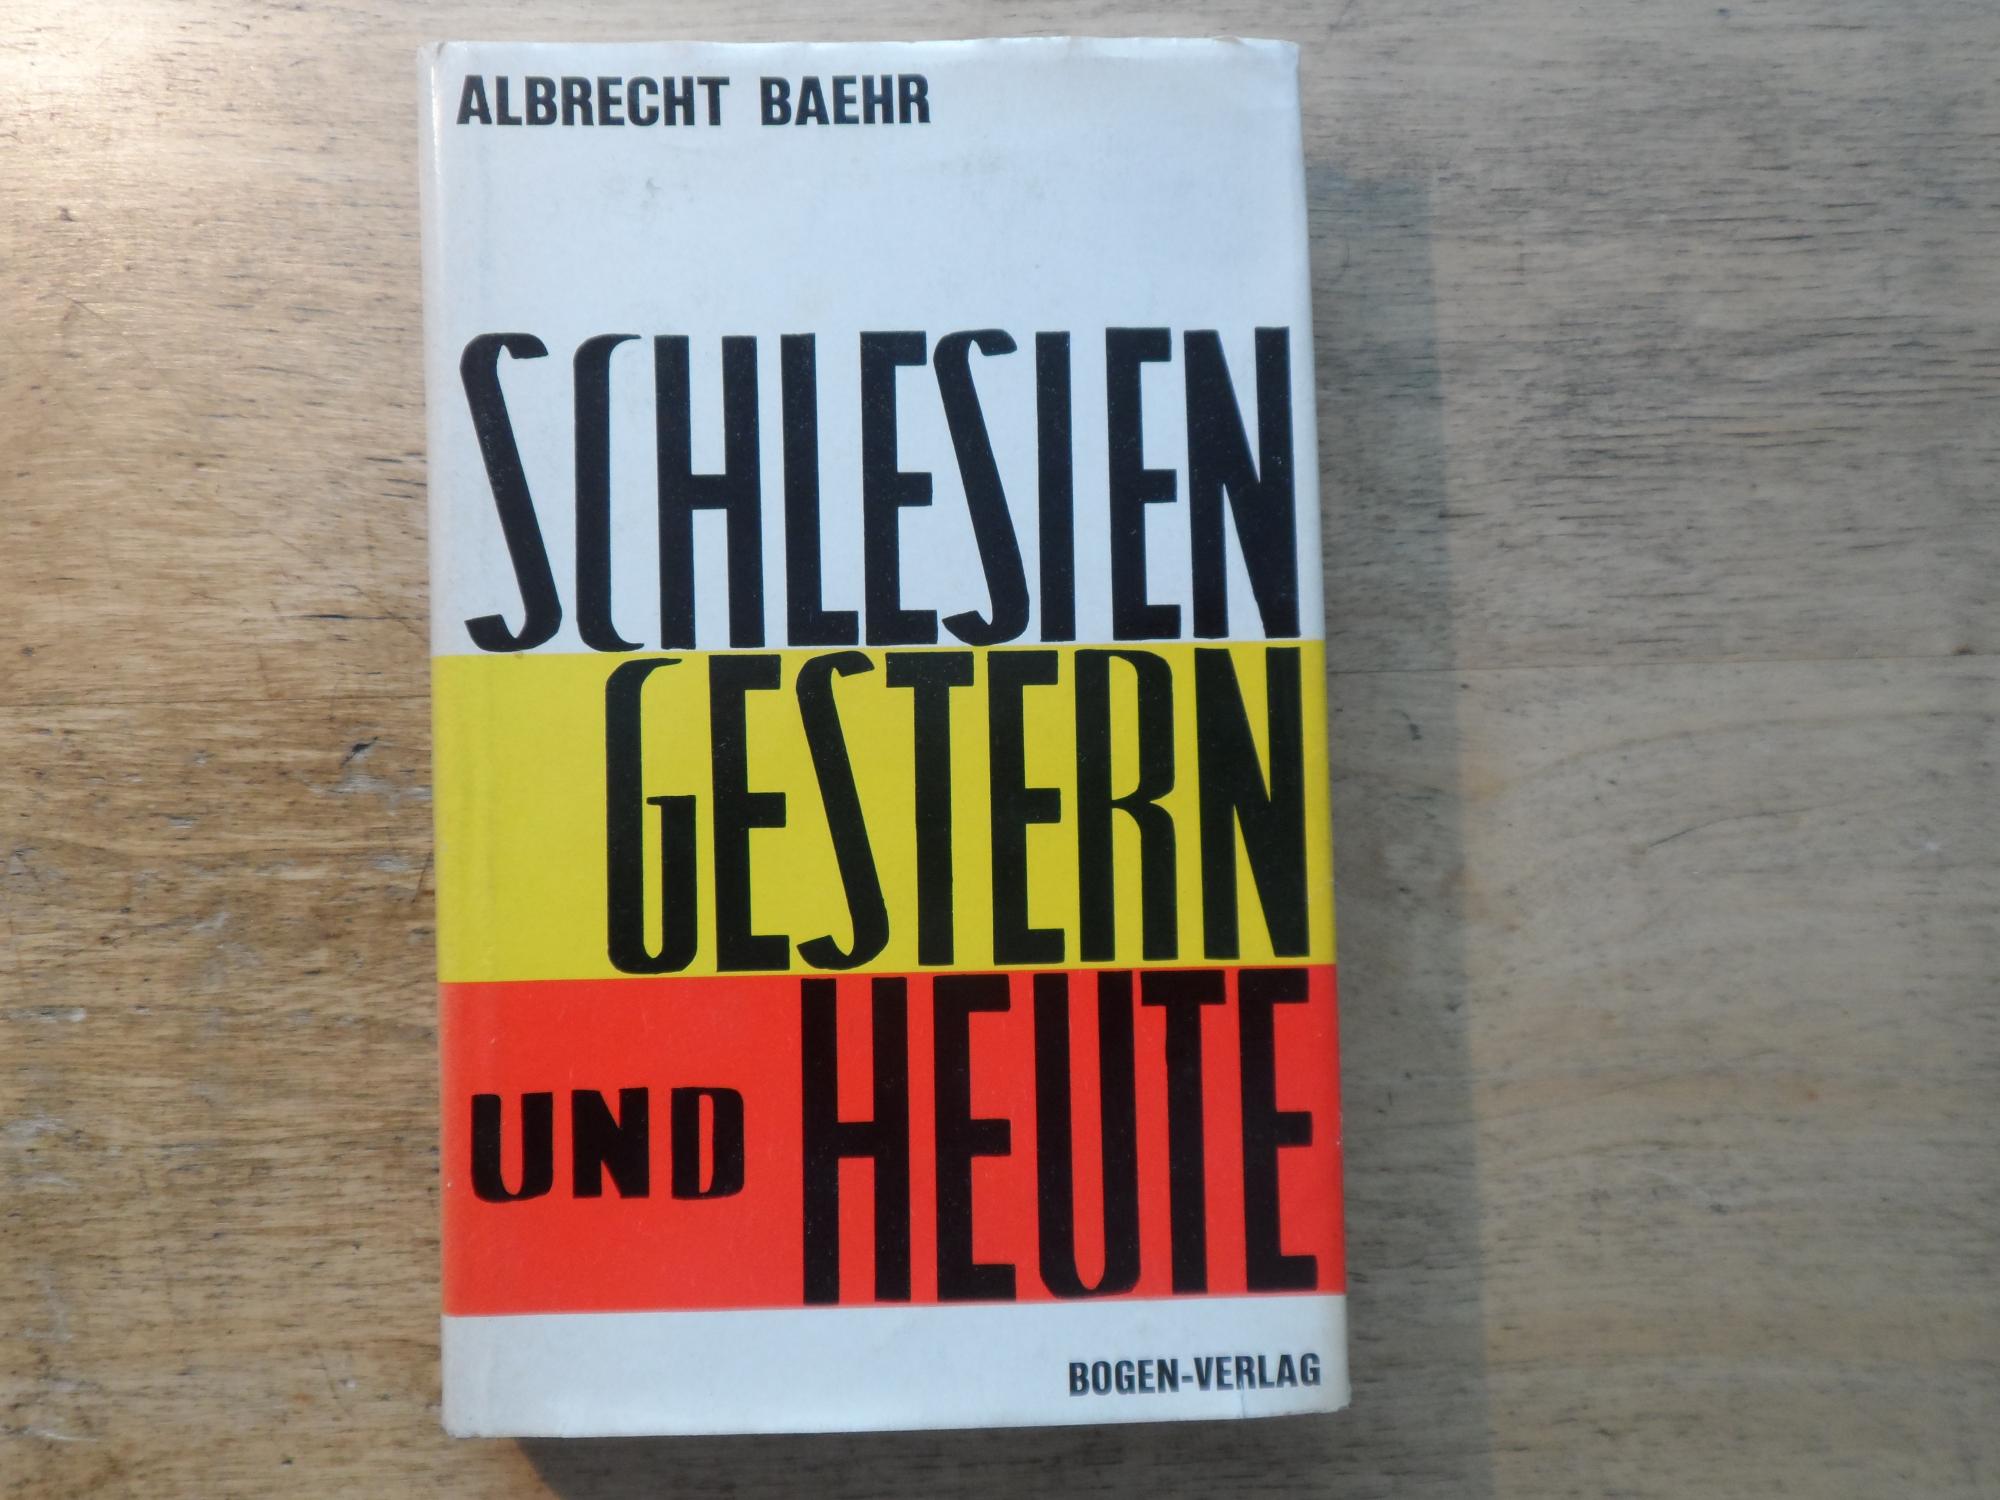 Schlesien gestern und heute - Eine Auswahl von Dichtungen und Berichten namhafter Autoren - Baehr,Albrecht